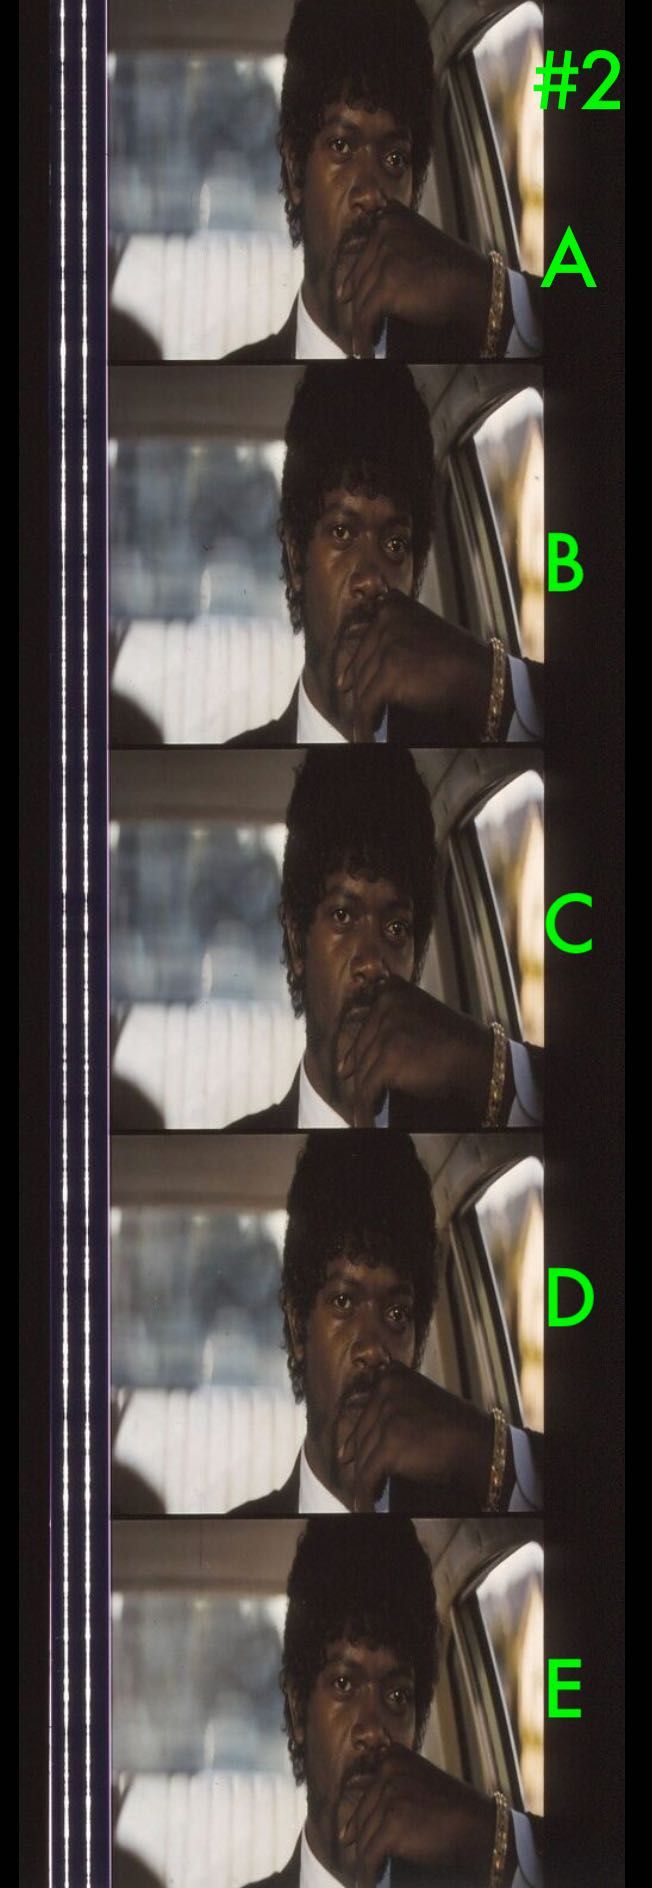 Fotogramas em película do filme PULP FICTION